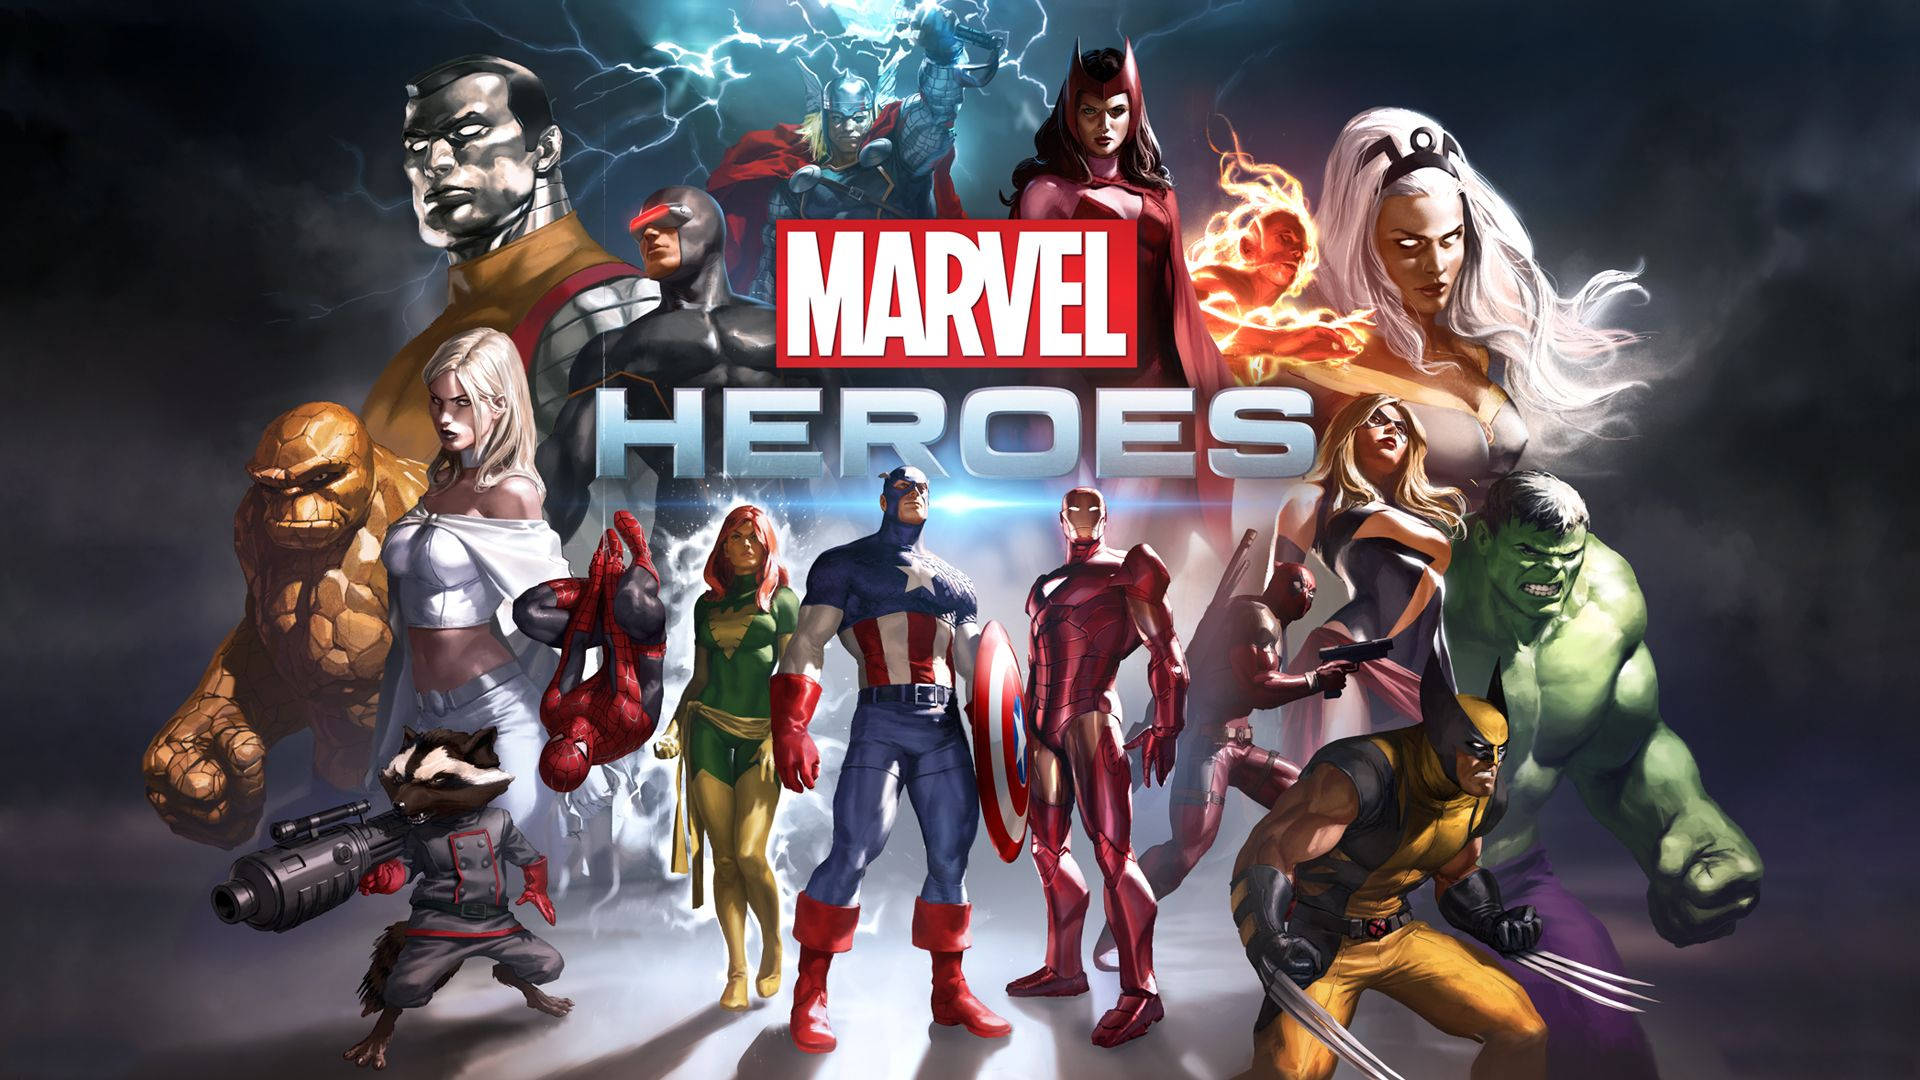 Immaginal'epica Avventura Marvel Con Il Videogioco Degli Avengers Su Playstation 4. Sfondo